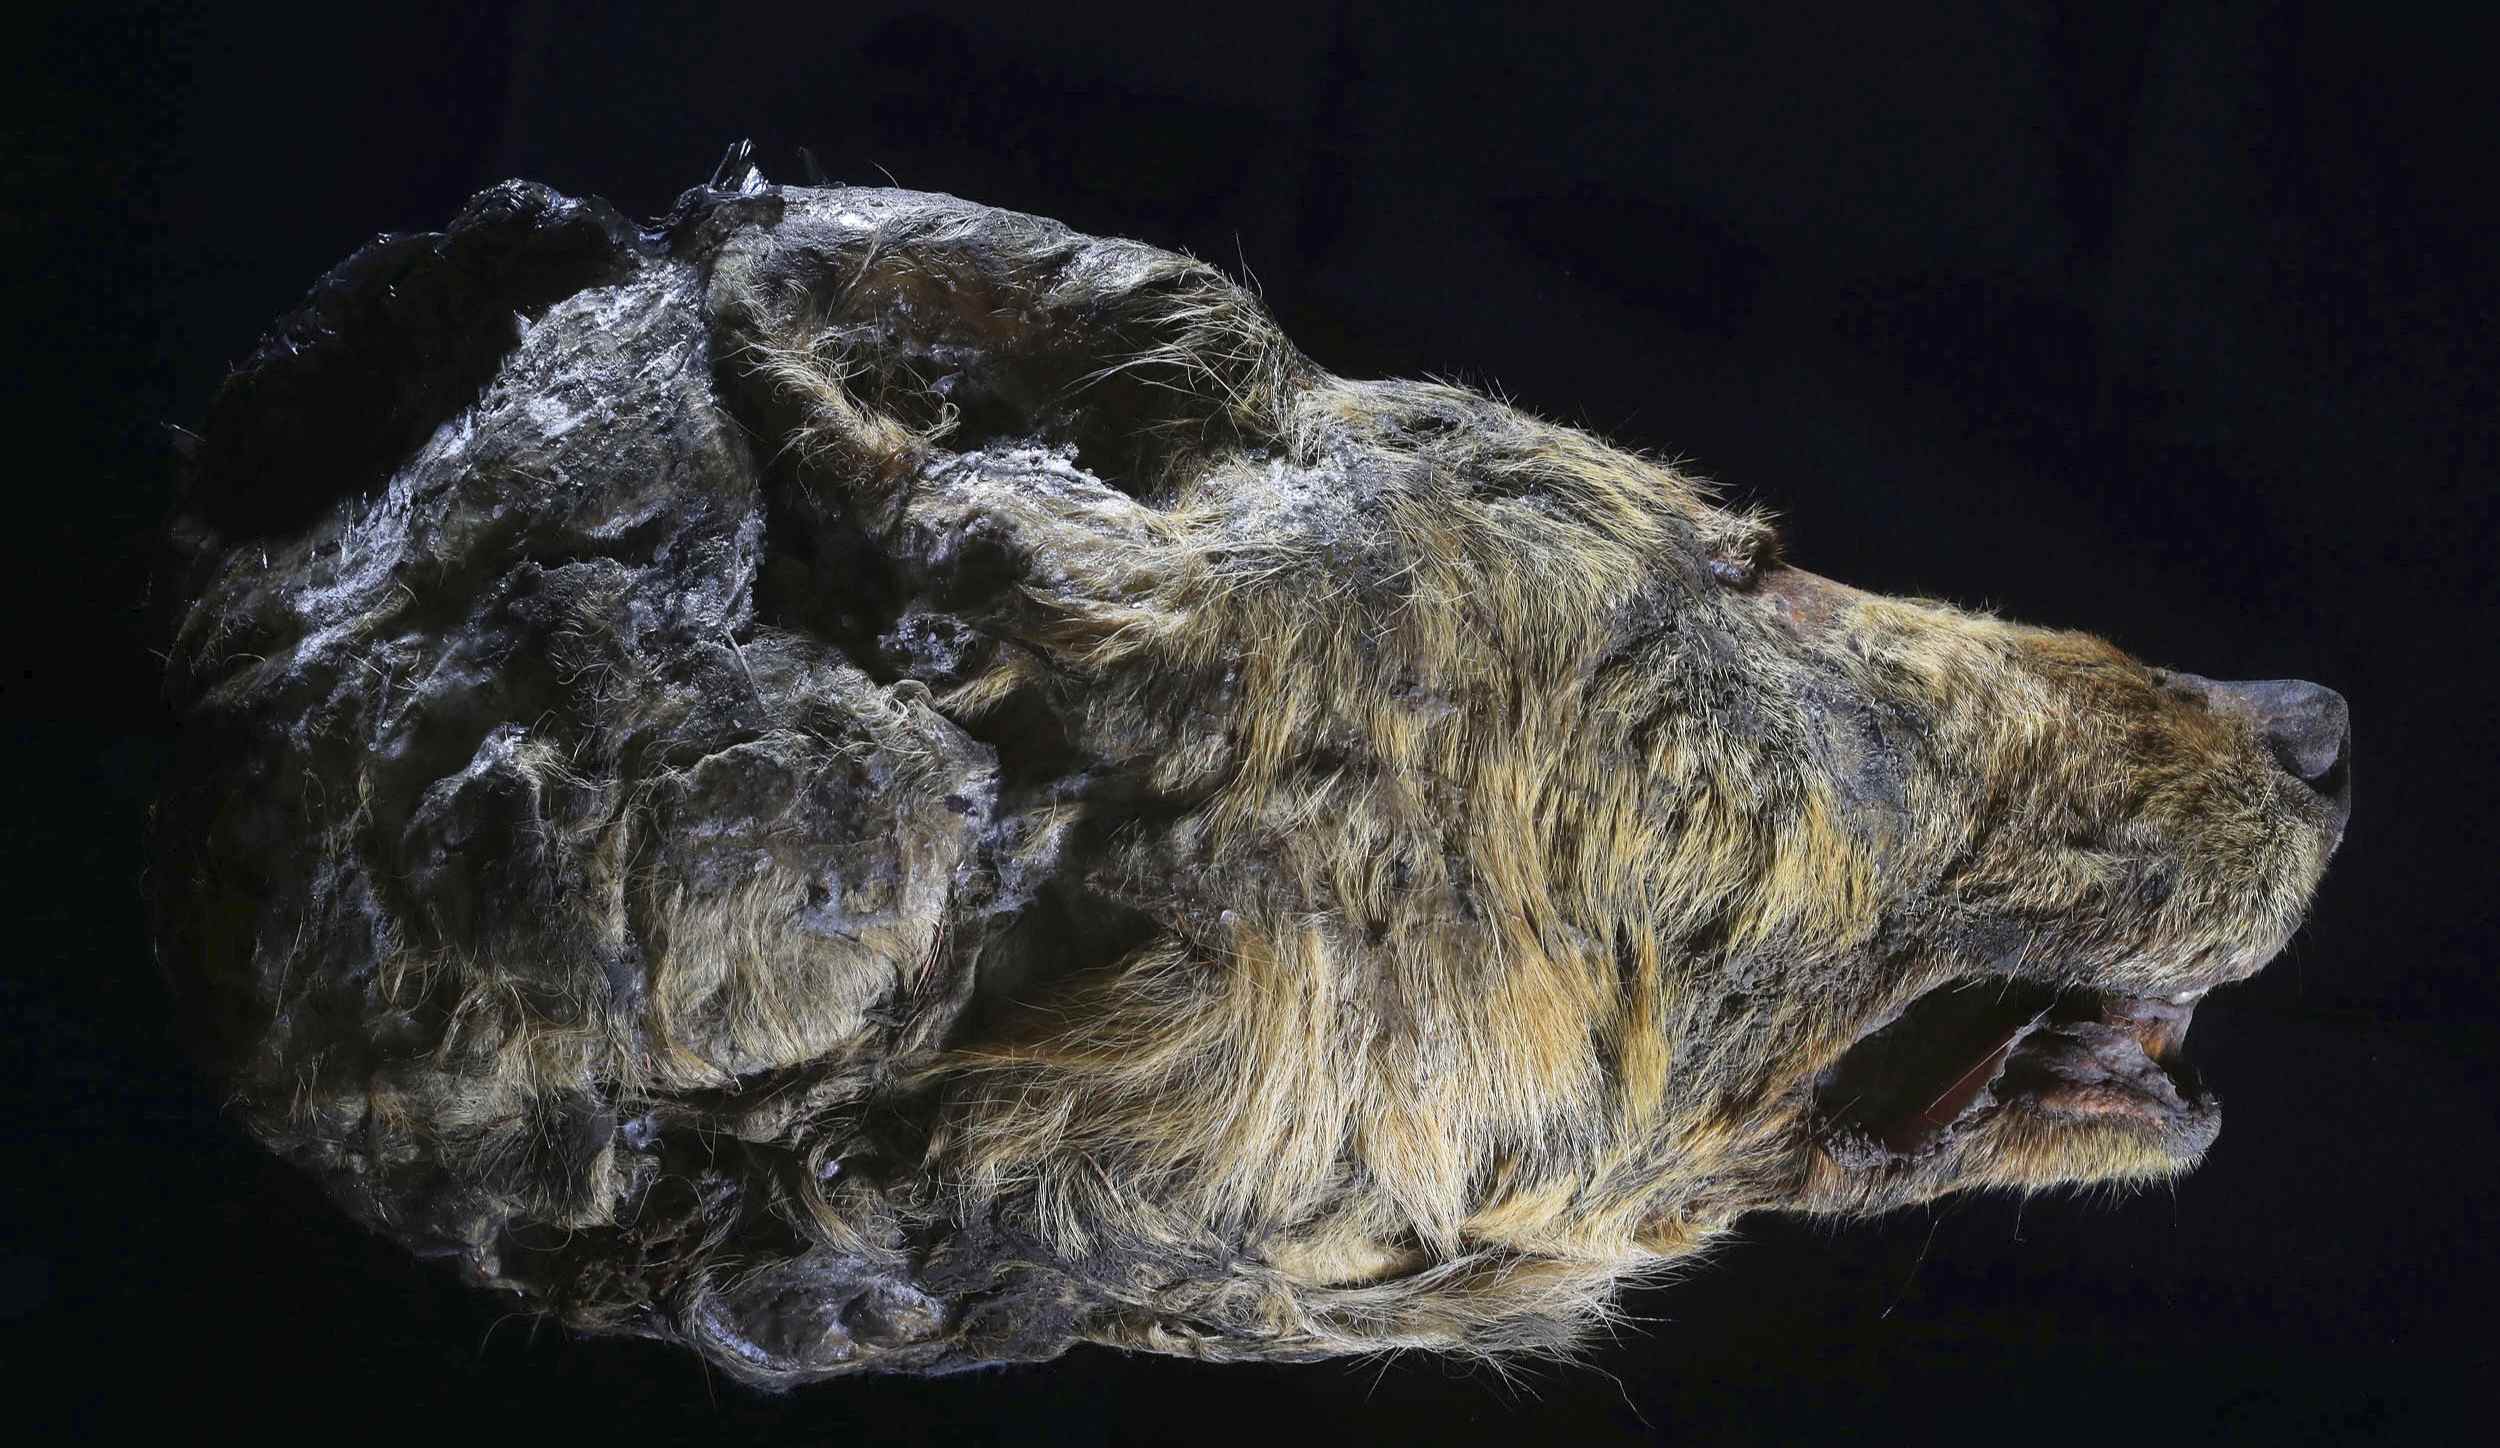 พบหัวหมาป่าอายุ 32,000 ปีที่ได้รับการอนุรักษ์ไว้อย่างสมบูรณ์ในชั้น Permafrost 2 ของไซบีเรีย